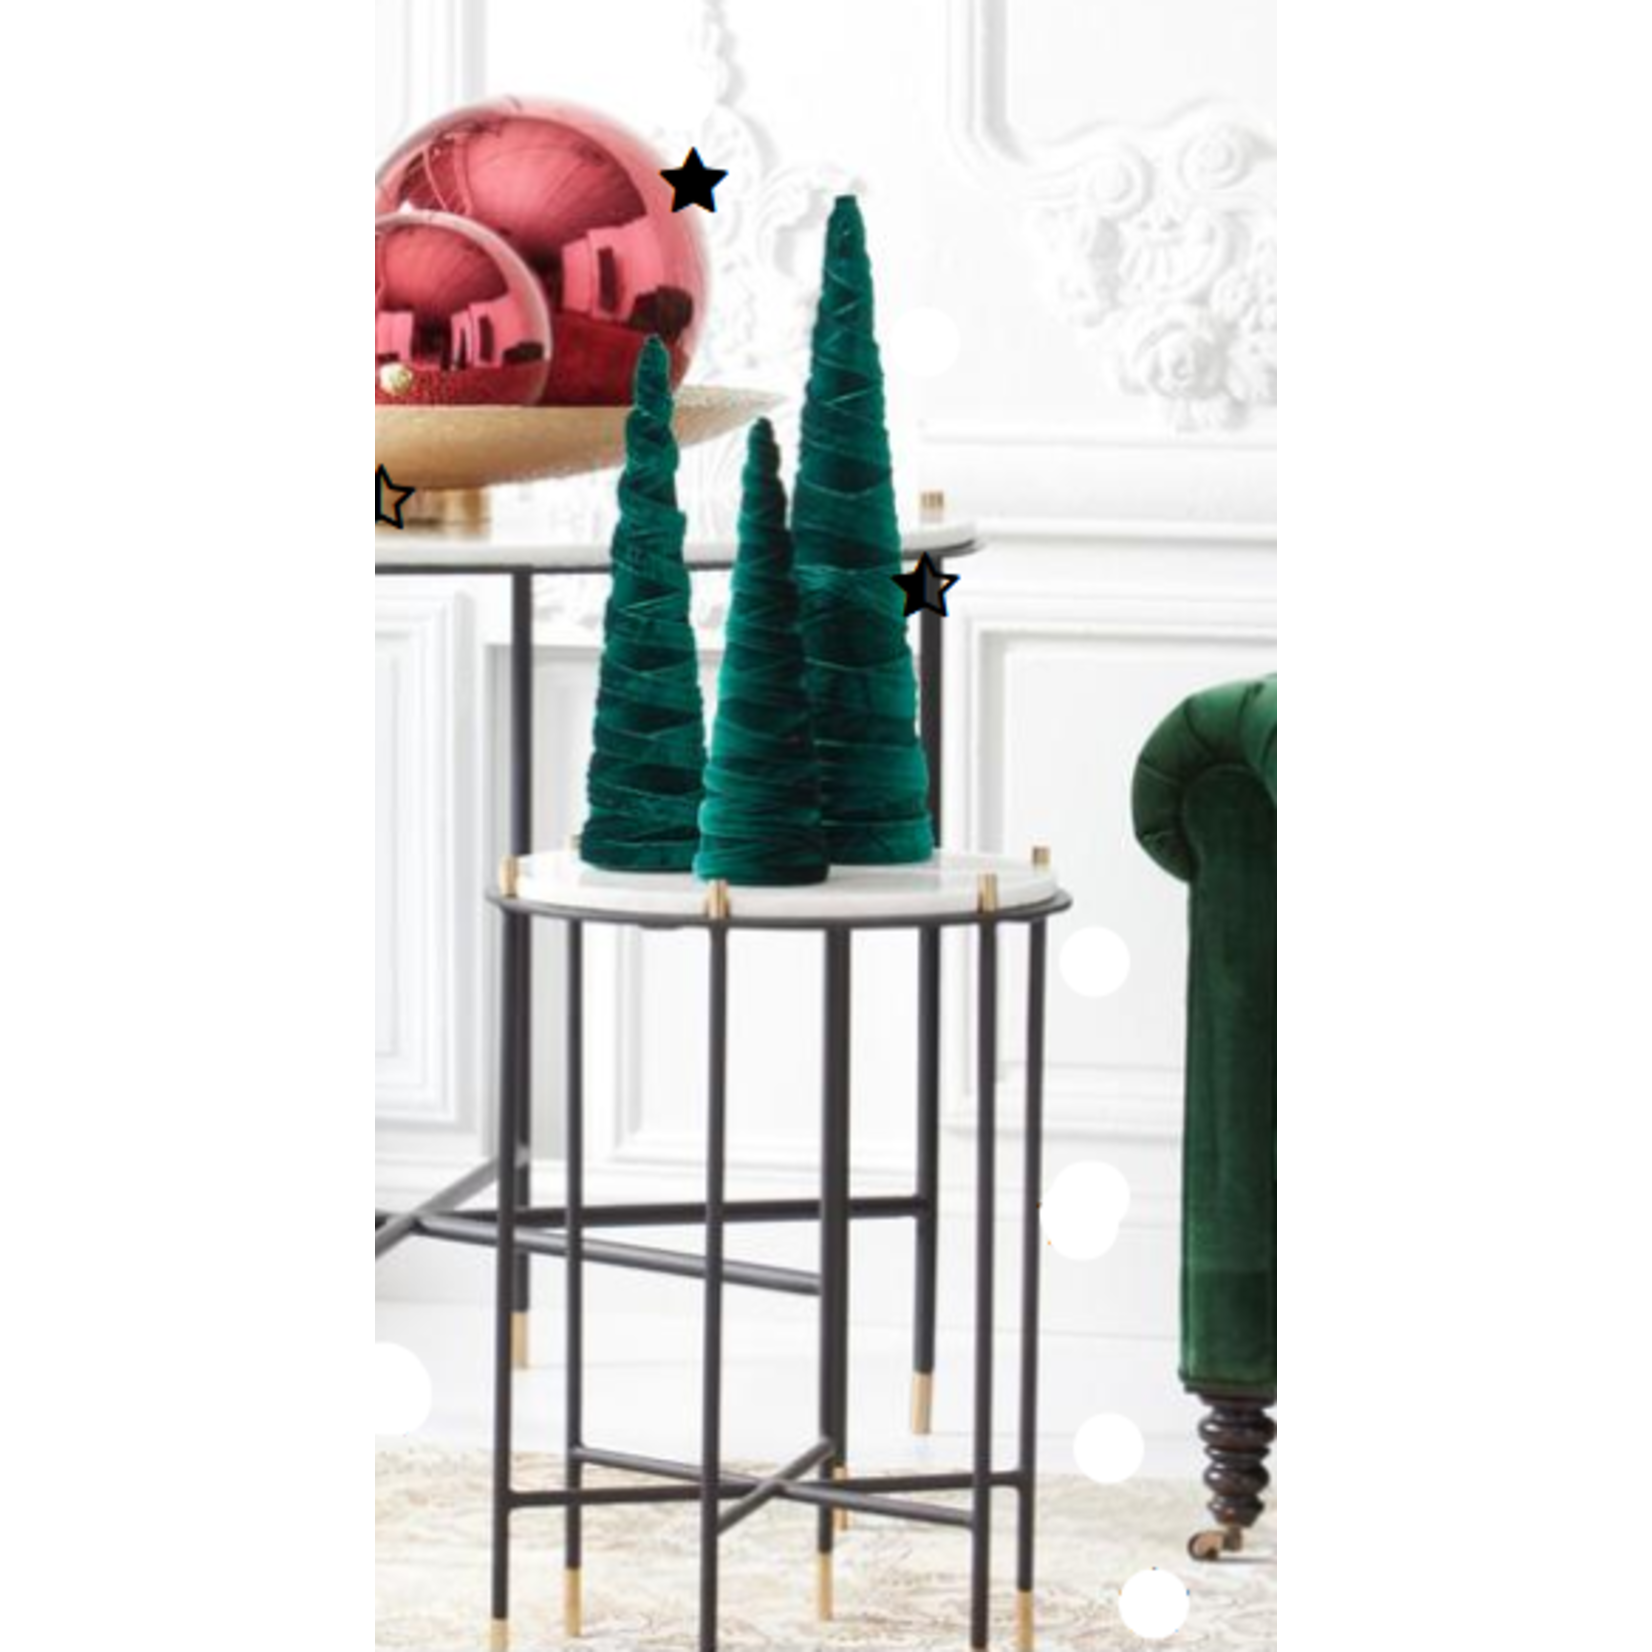 S/3 Dark Green Velvet Spiraled Fabric Cone Trees